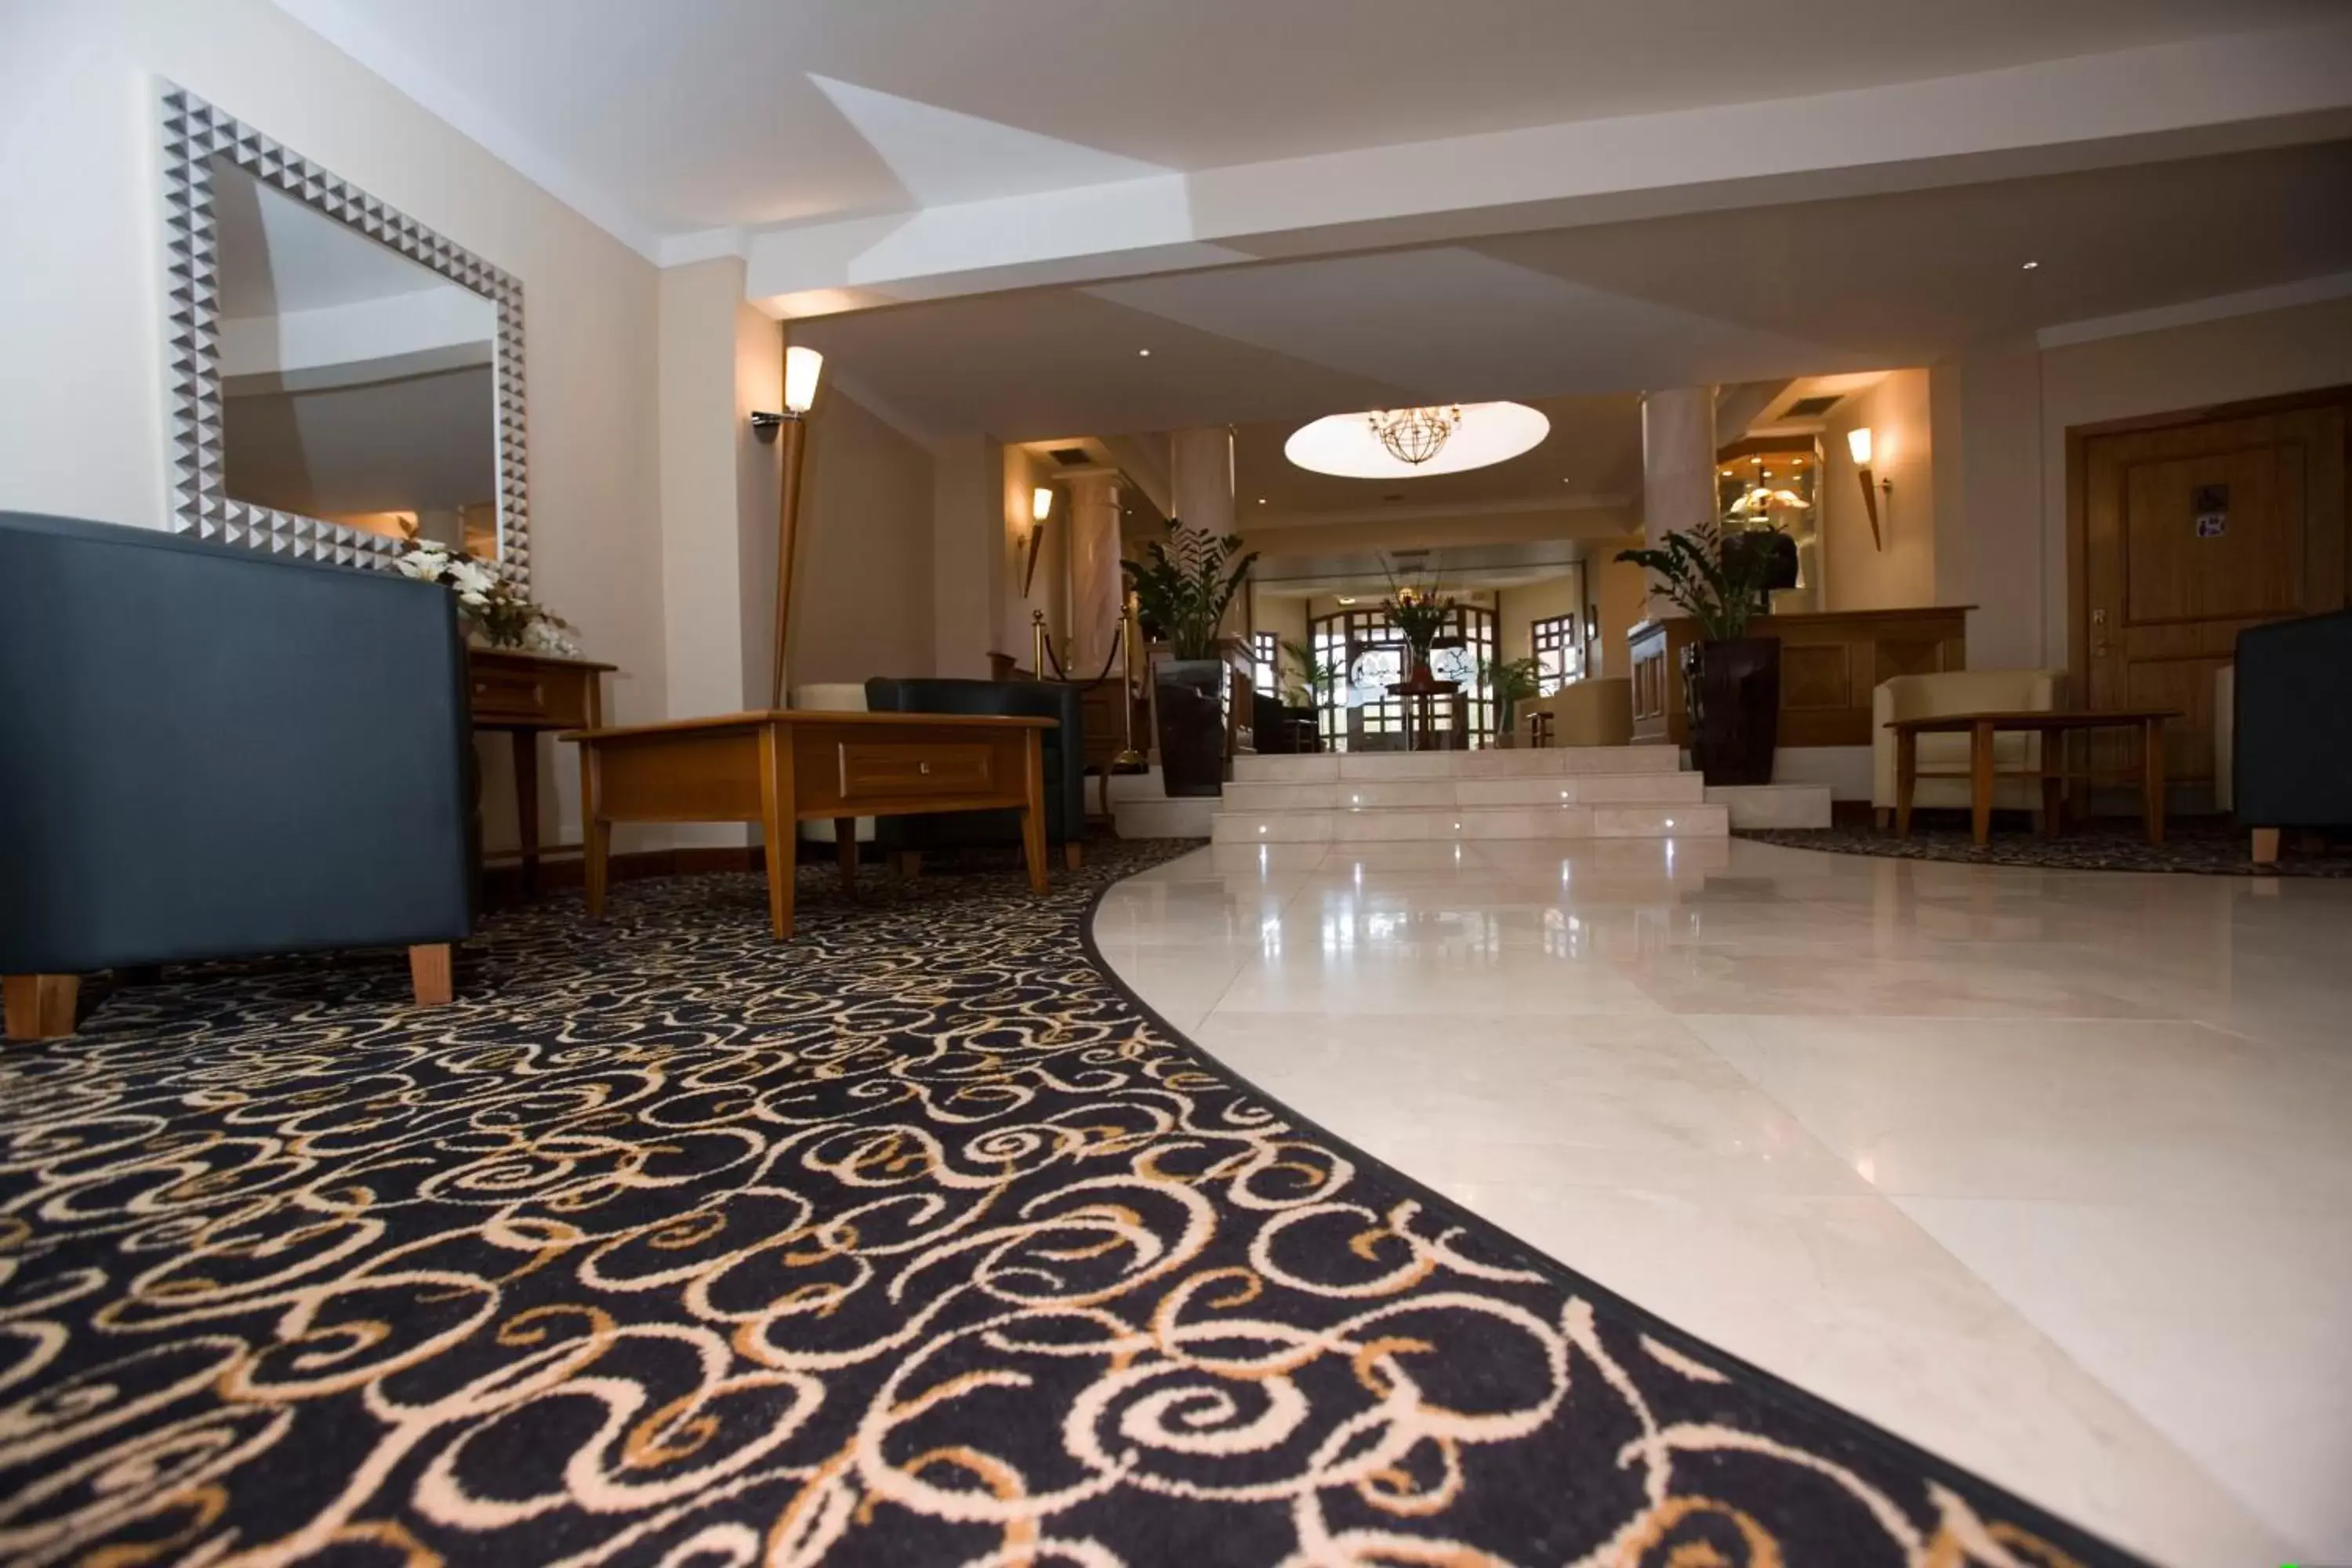 Lobby or reception in Bryn Meadows Golf, Hotel & Spa